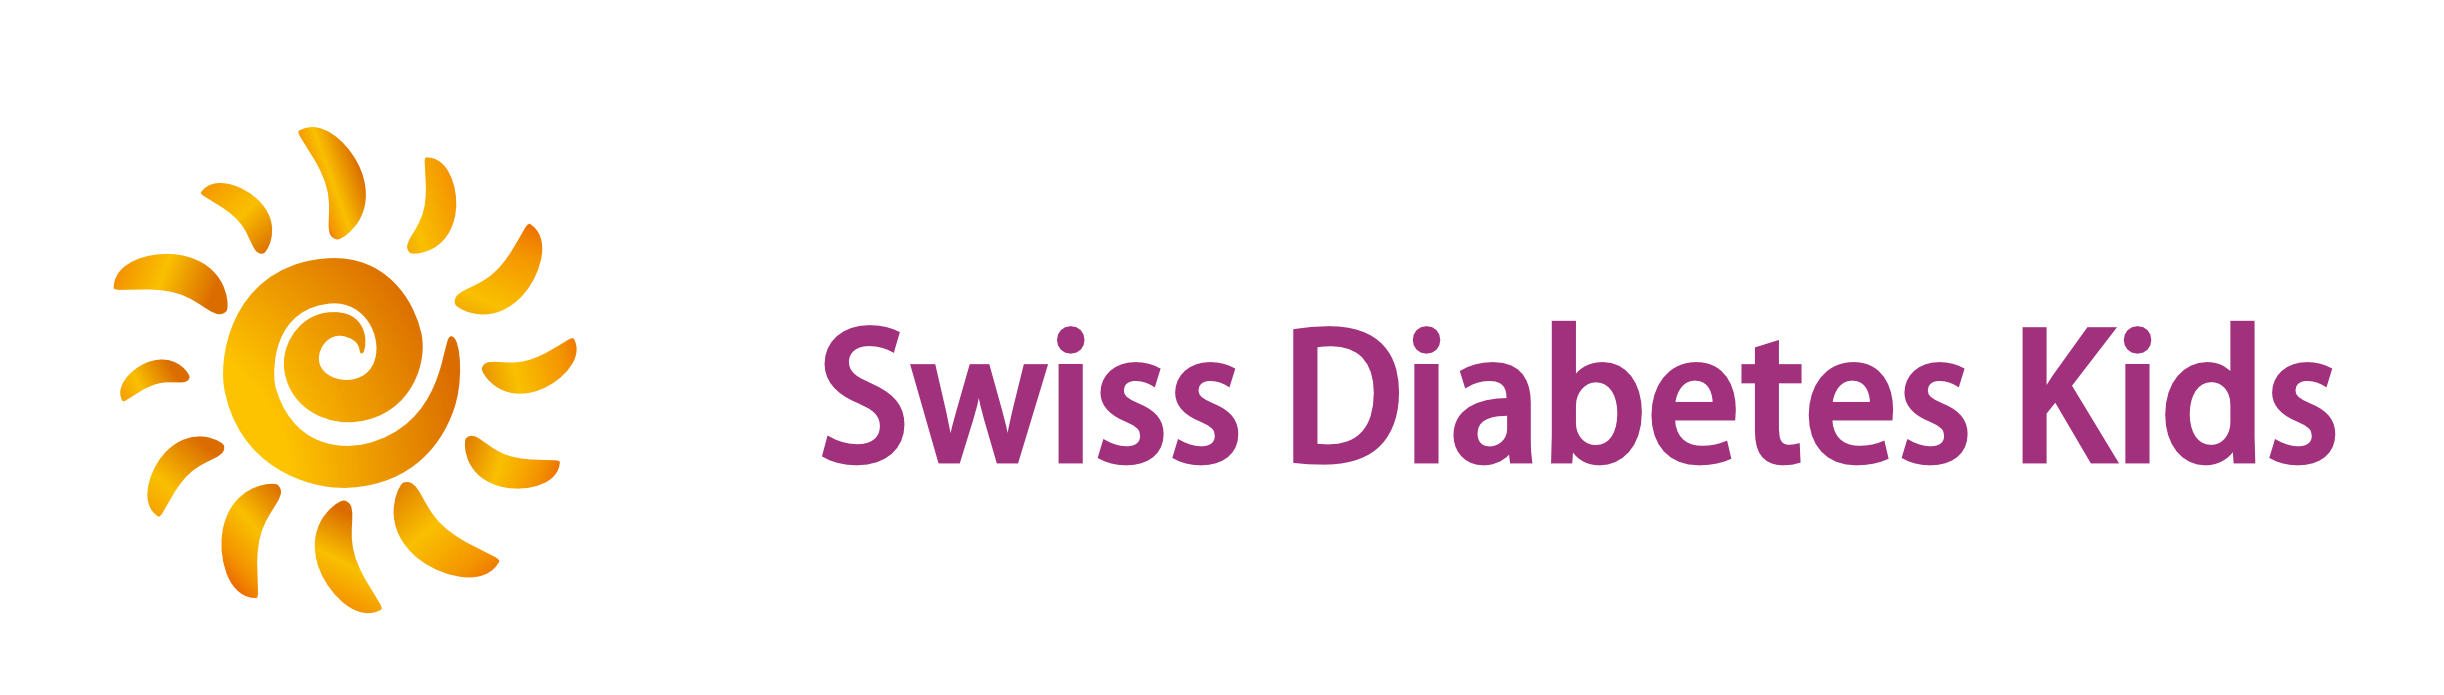 Swiss Diabetes Kids